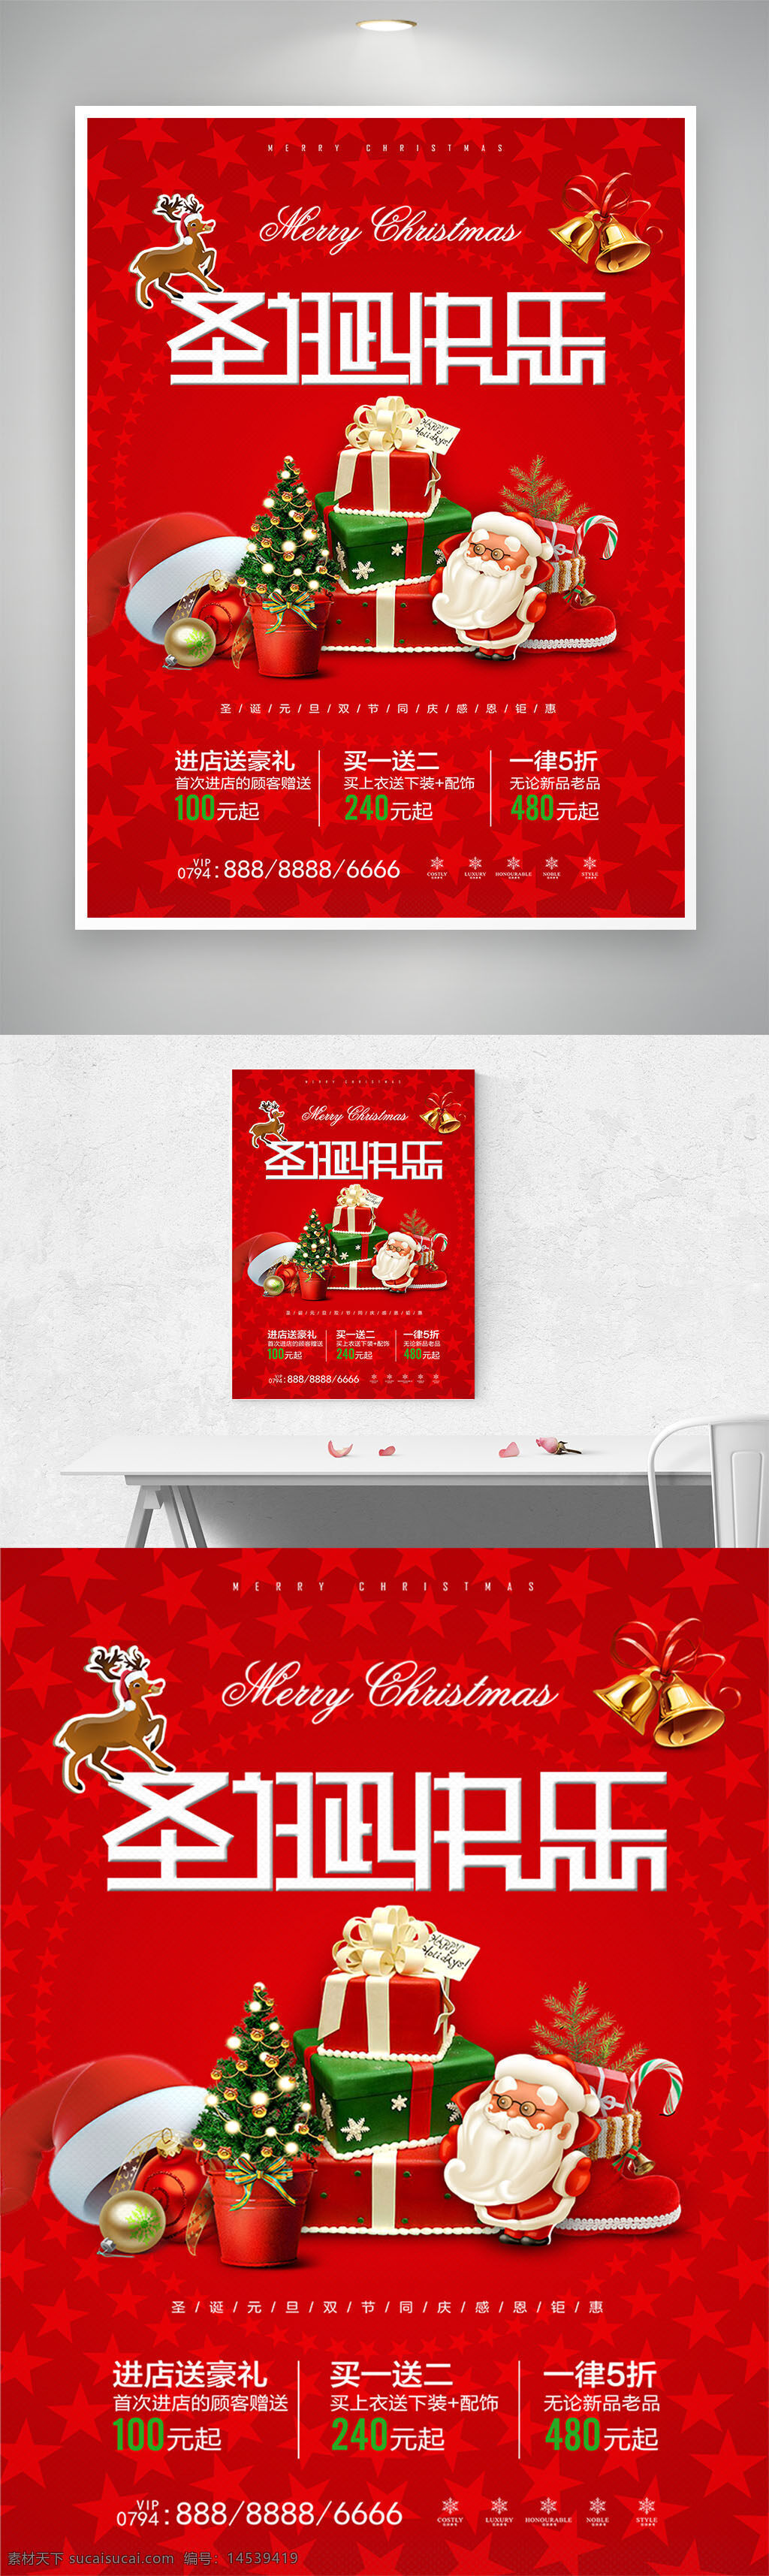 红色 温馨 圣诞节 海报